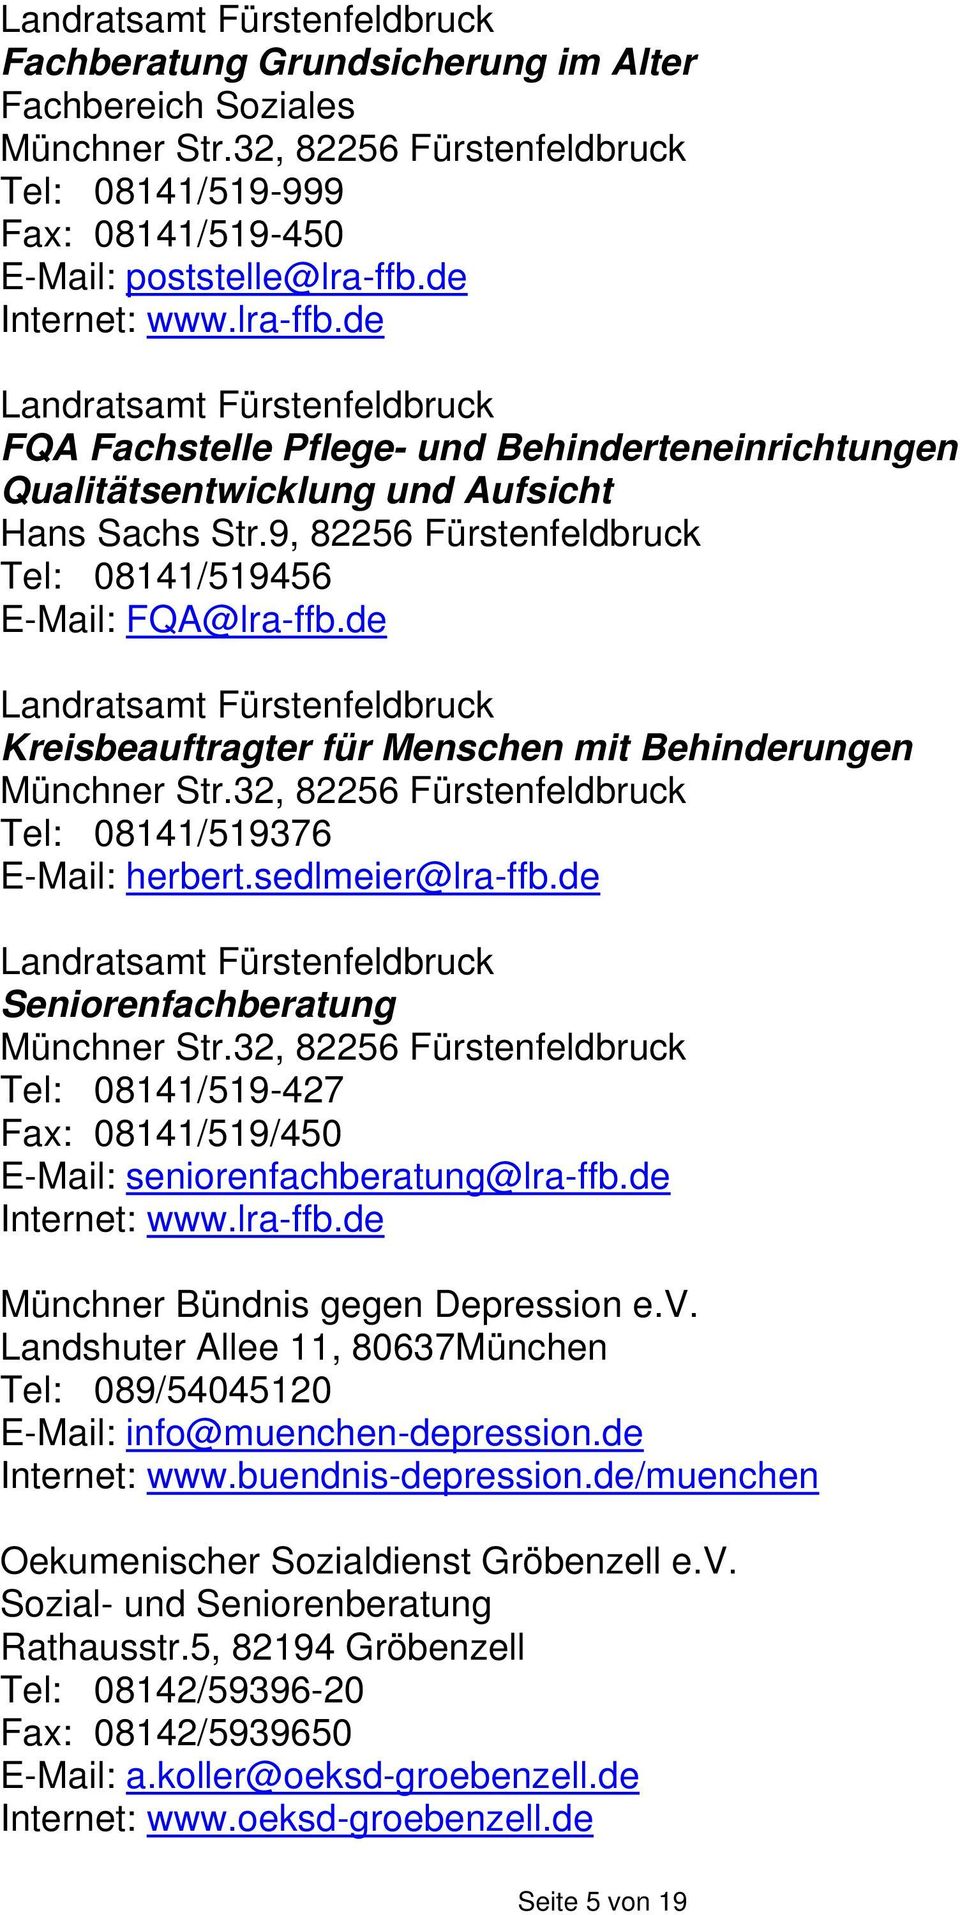 9, 82256 Fürstenfeldbruck Tel: 08141/519456 E-Mail: FQA@lra-ffb.de Landratsamt Fürstenfeldbruck Kreisbeauftragter für Menschen mit Behinderungen Münchner Str.